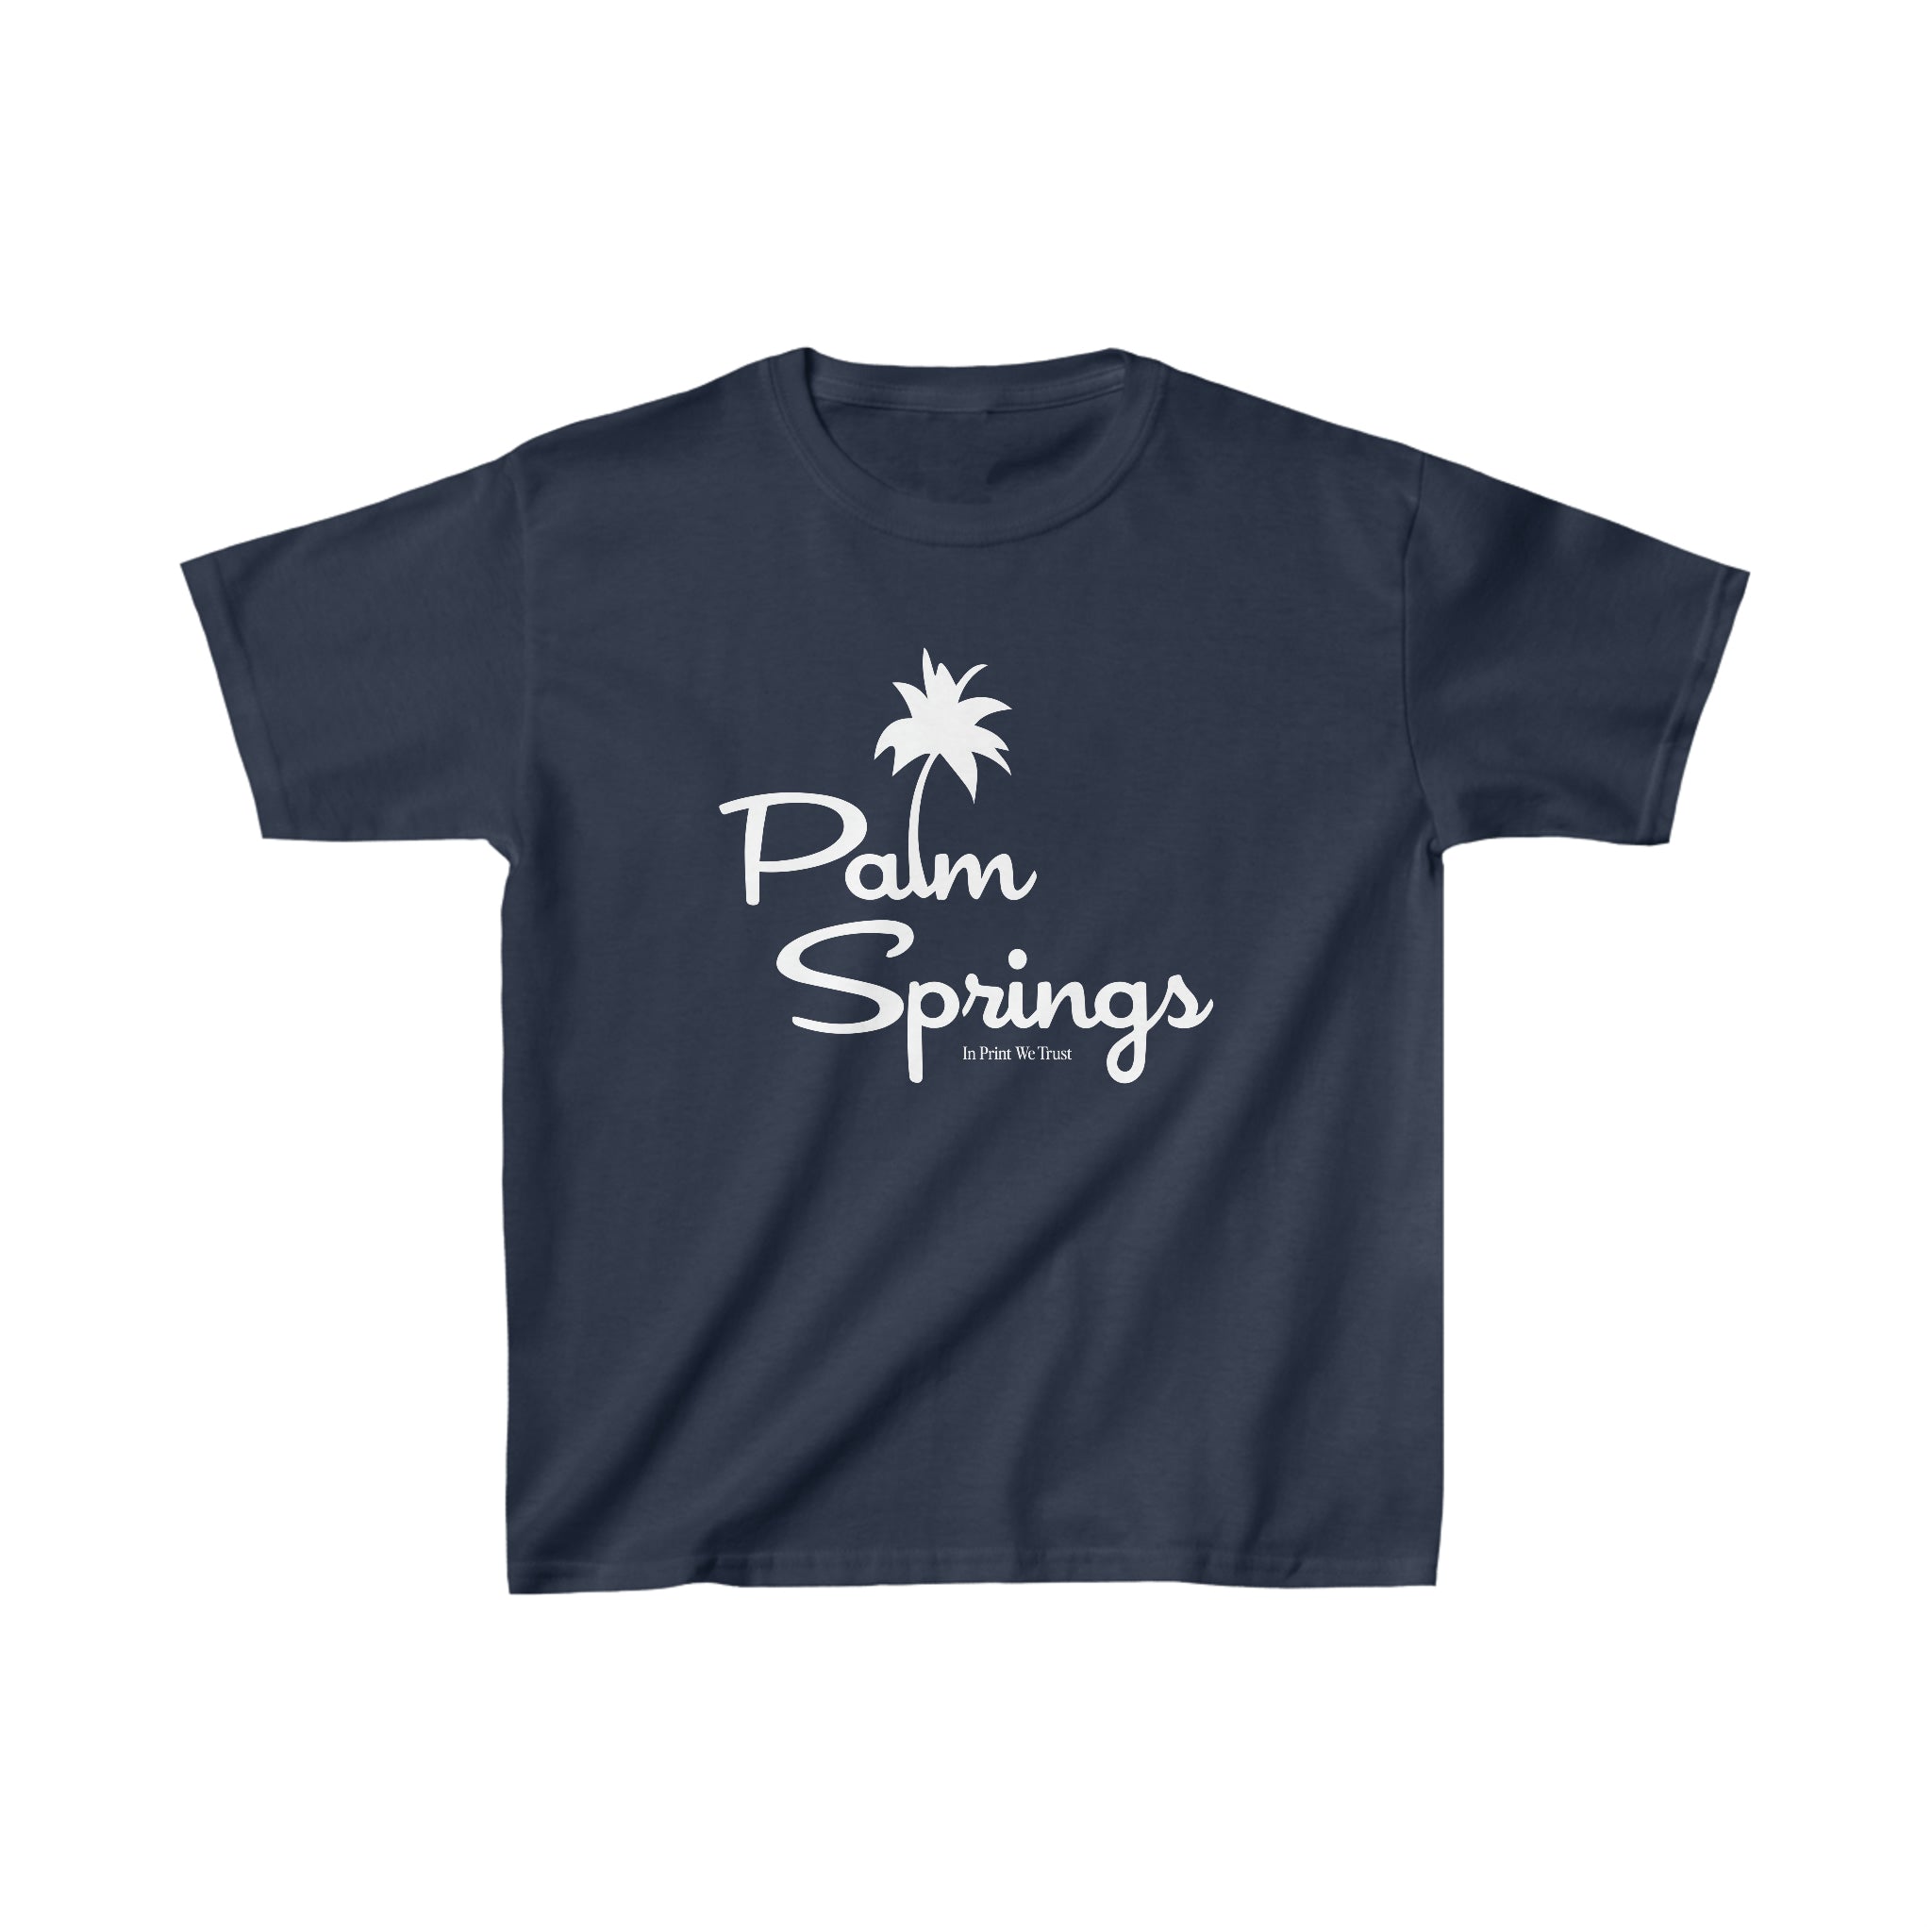 'Palm Springs' baby tee - In Print We Trust